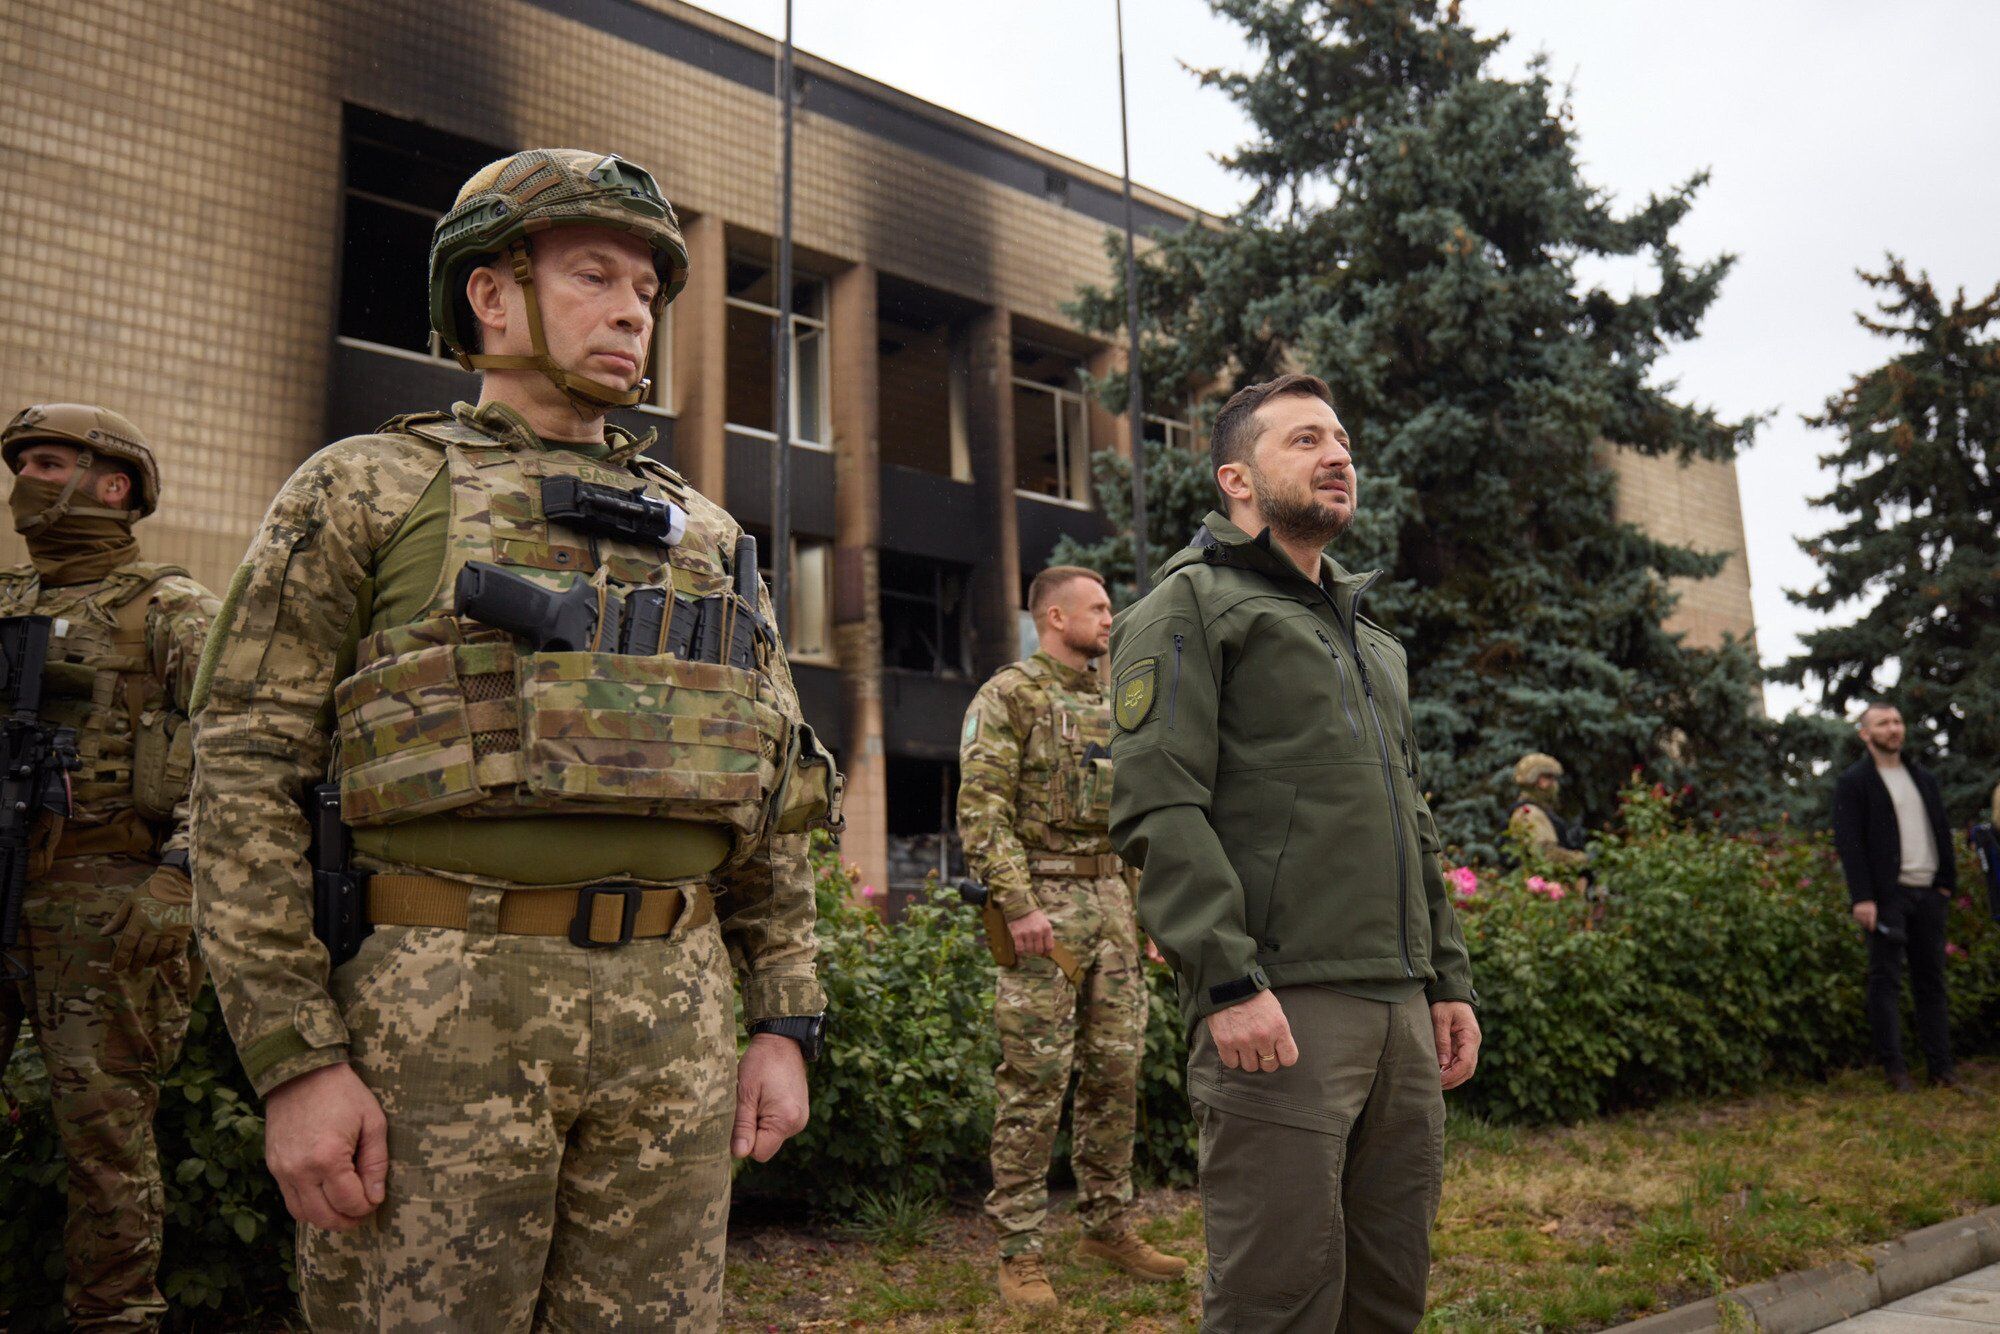 Зеленский приехал в освобожденный Изюм и поднял флаг Украины вместе с воинами. Фото